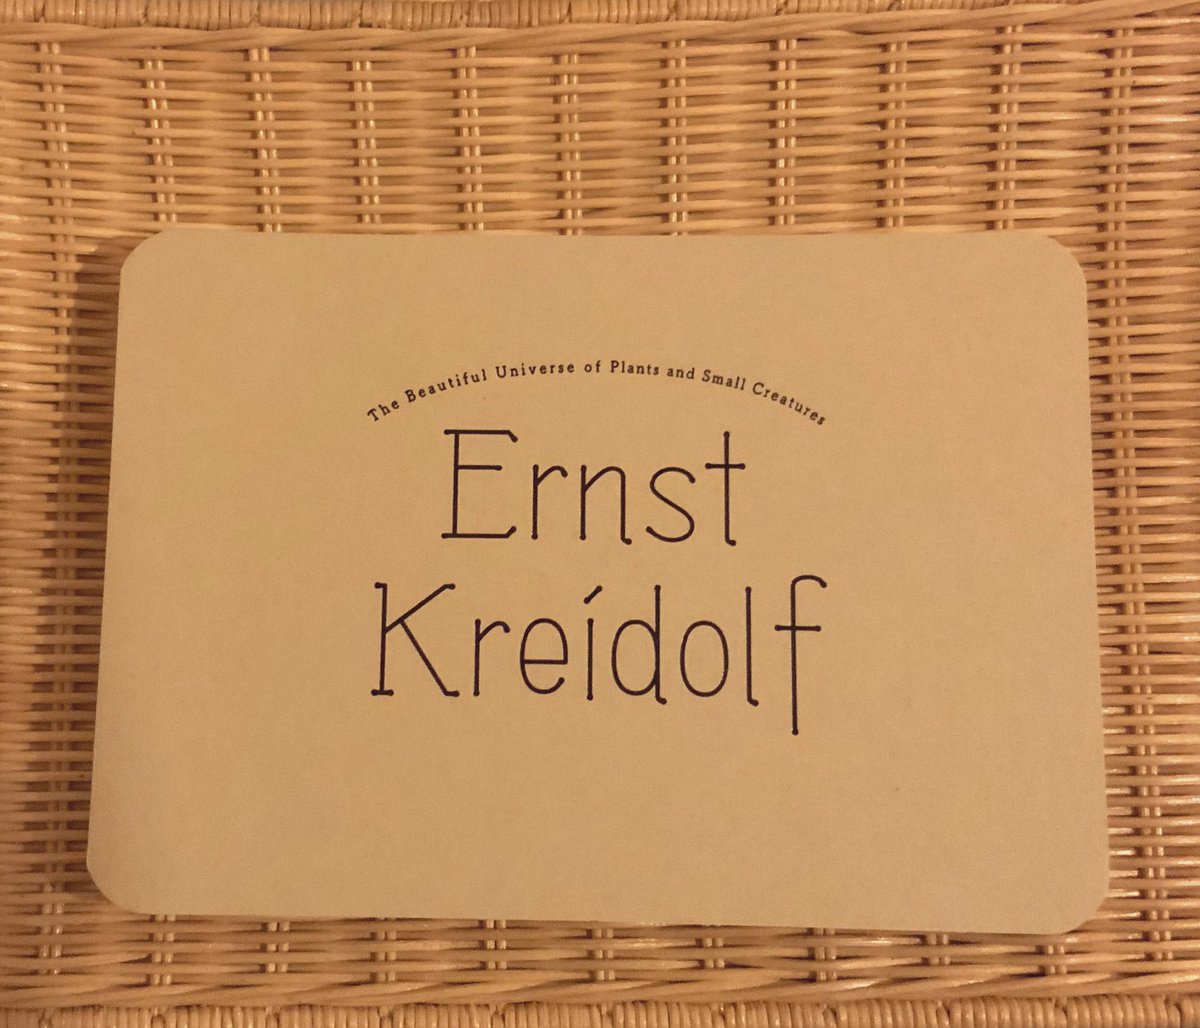 エルンスト・クライドルフ展に行ってきました。図録が可愛い!ポストカードほどのサイズに、この綴じ方。以前吉成曜さんの画集がコデックス装で話題になってましたね。見開きに気を使わなくていいので好きな綴じ方です。 